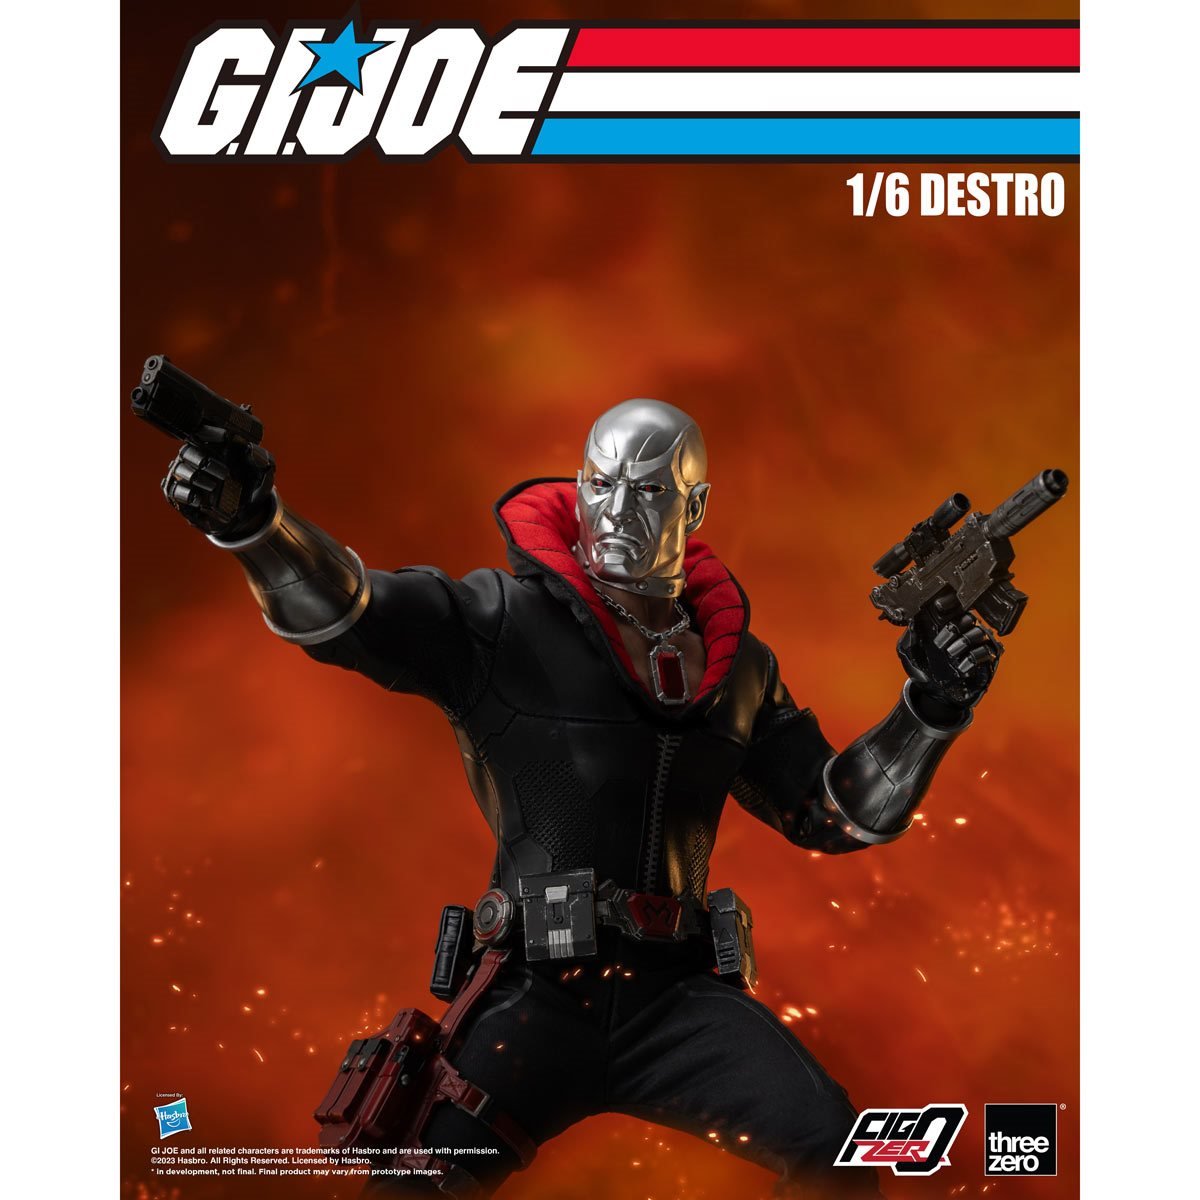 G.I. Joe1/6 Firefly – threezero store